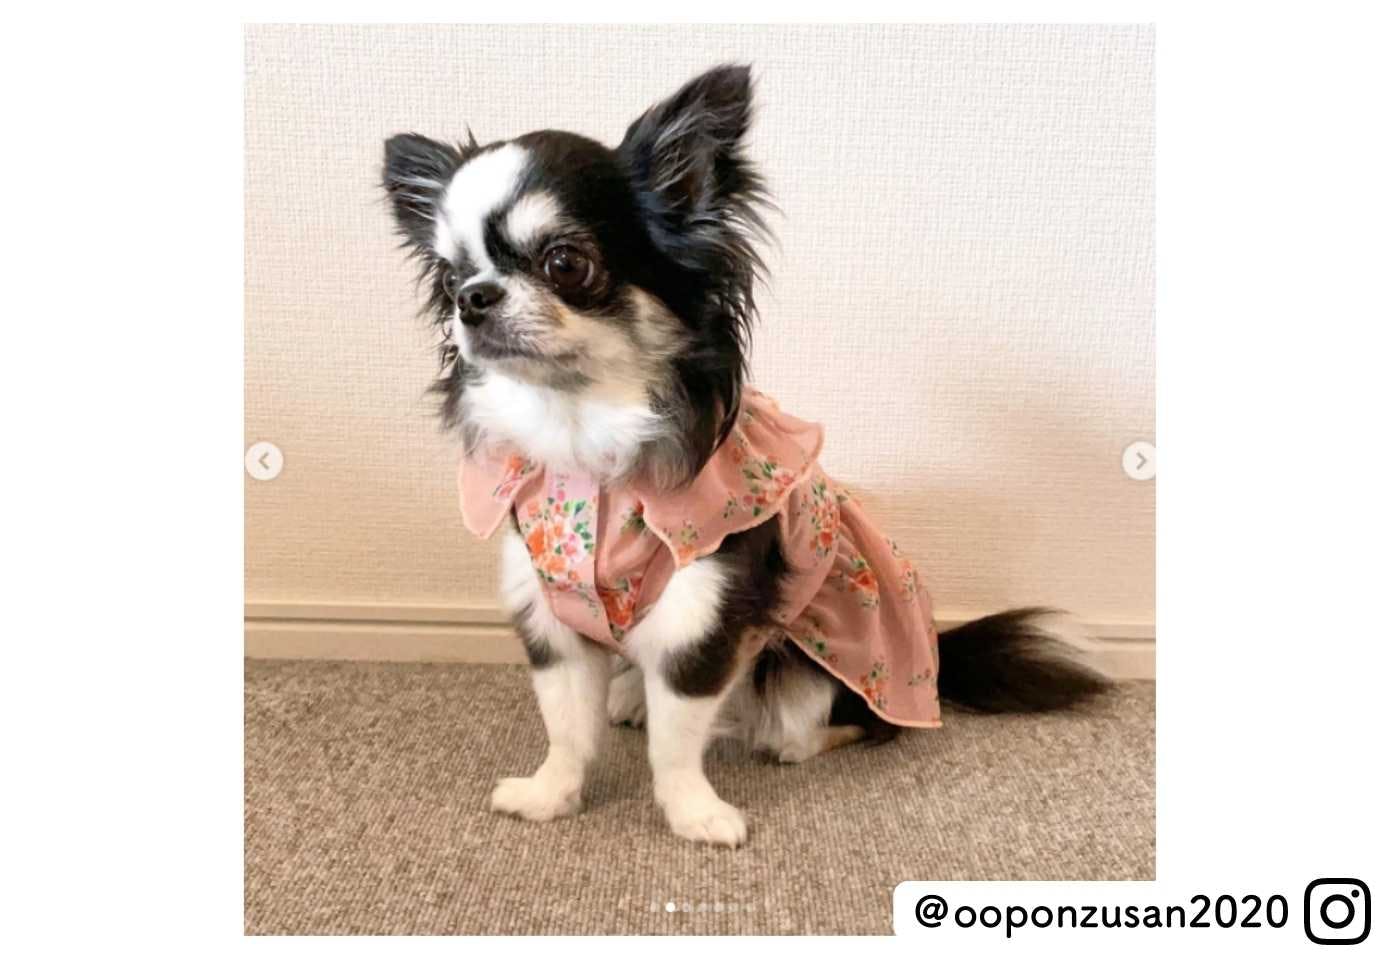 カインズの可愛い犬服 フラワープリントワンピースを着たチワワ@ooponzusan2020